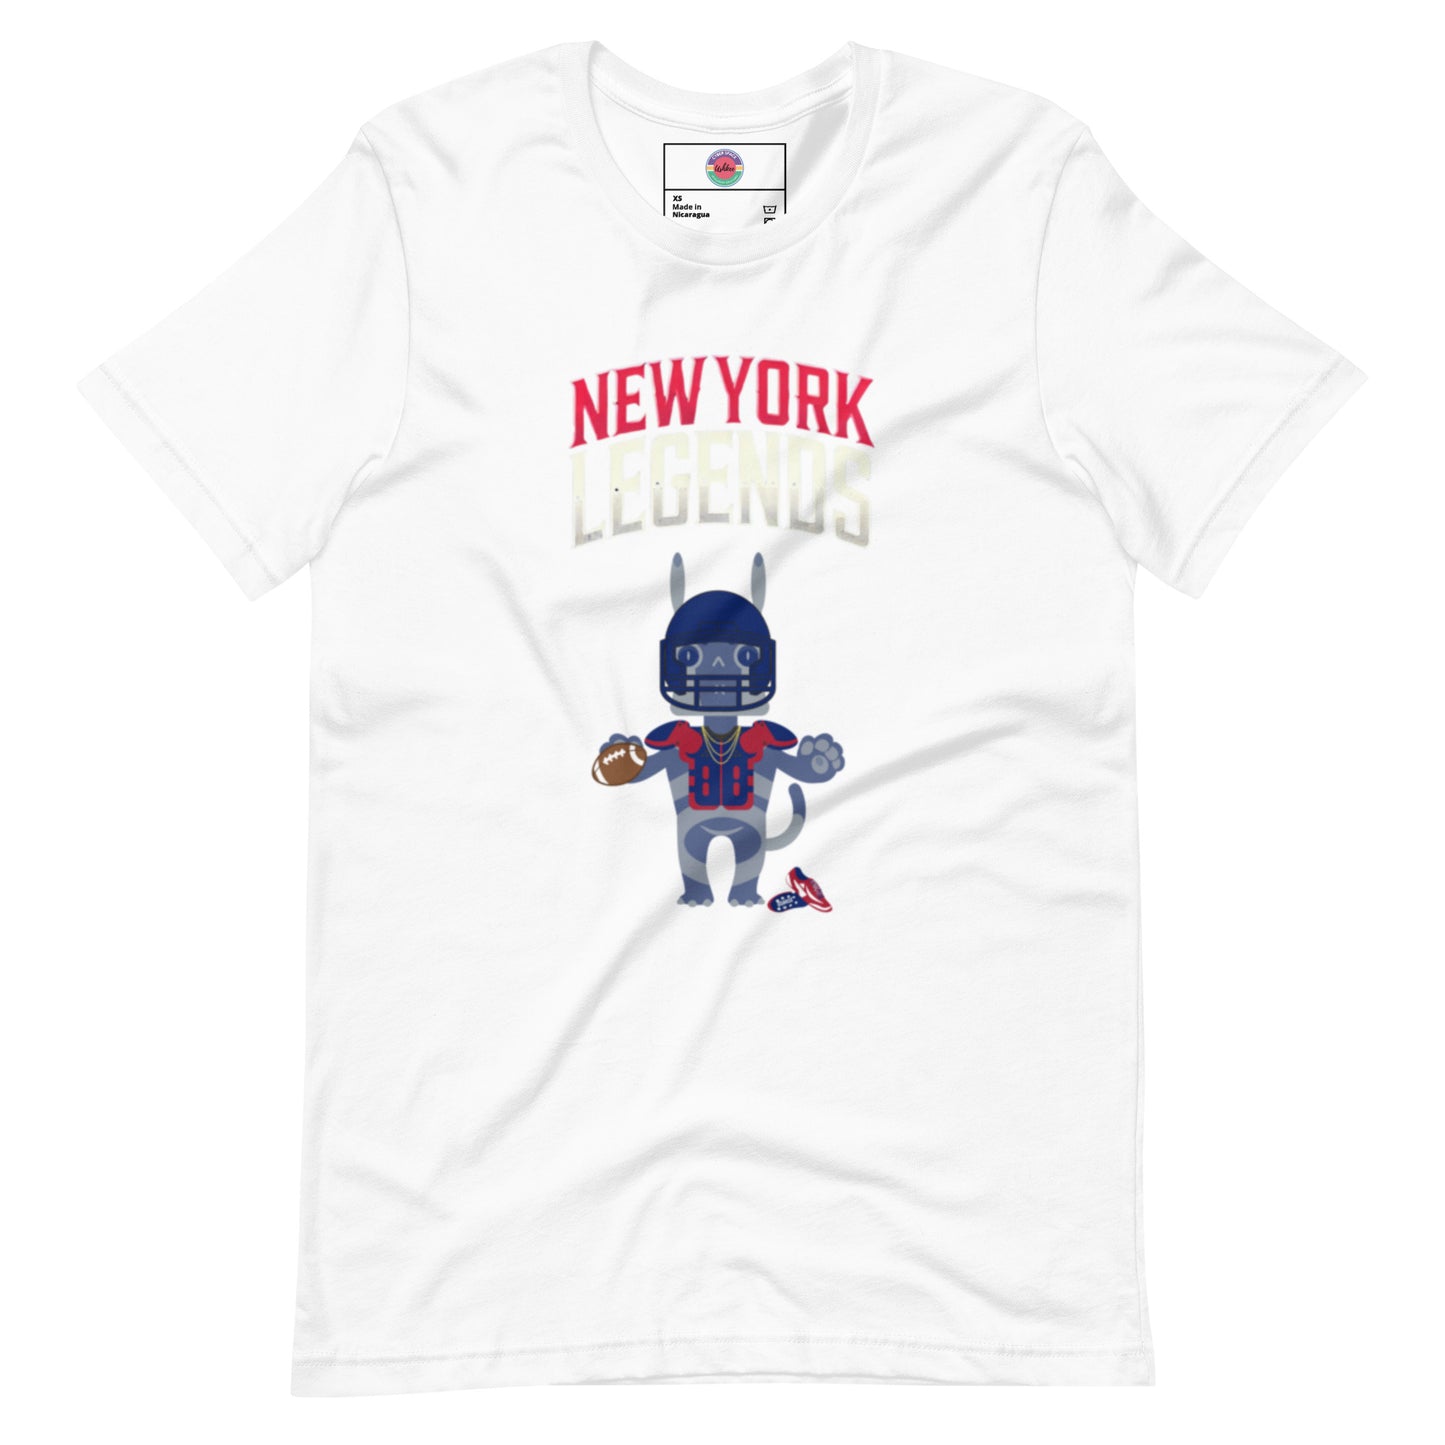 New York Legends F Unisex t-shirt